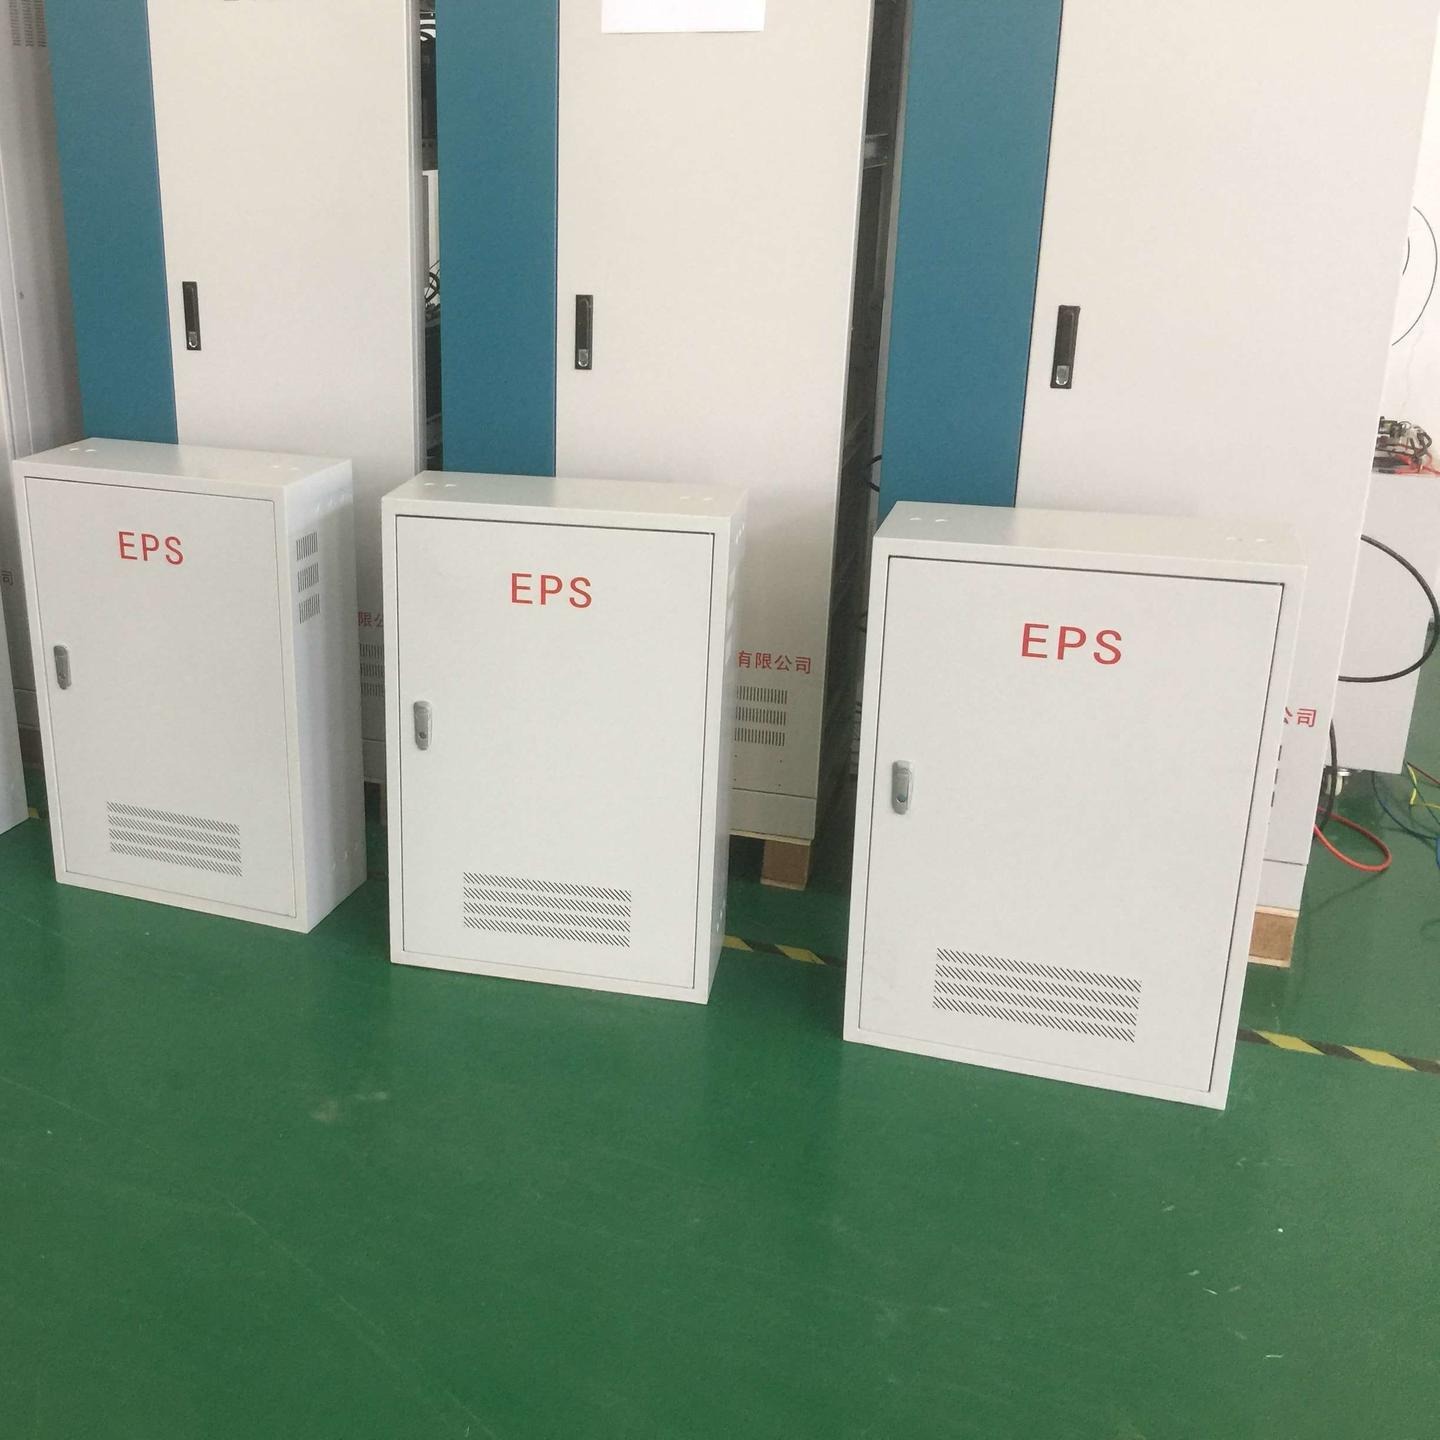 EPS应急启动电源，照明型应急电源，变频动力型应急启动电源，艾亚特启动型应急电源